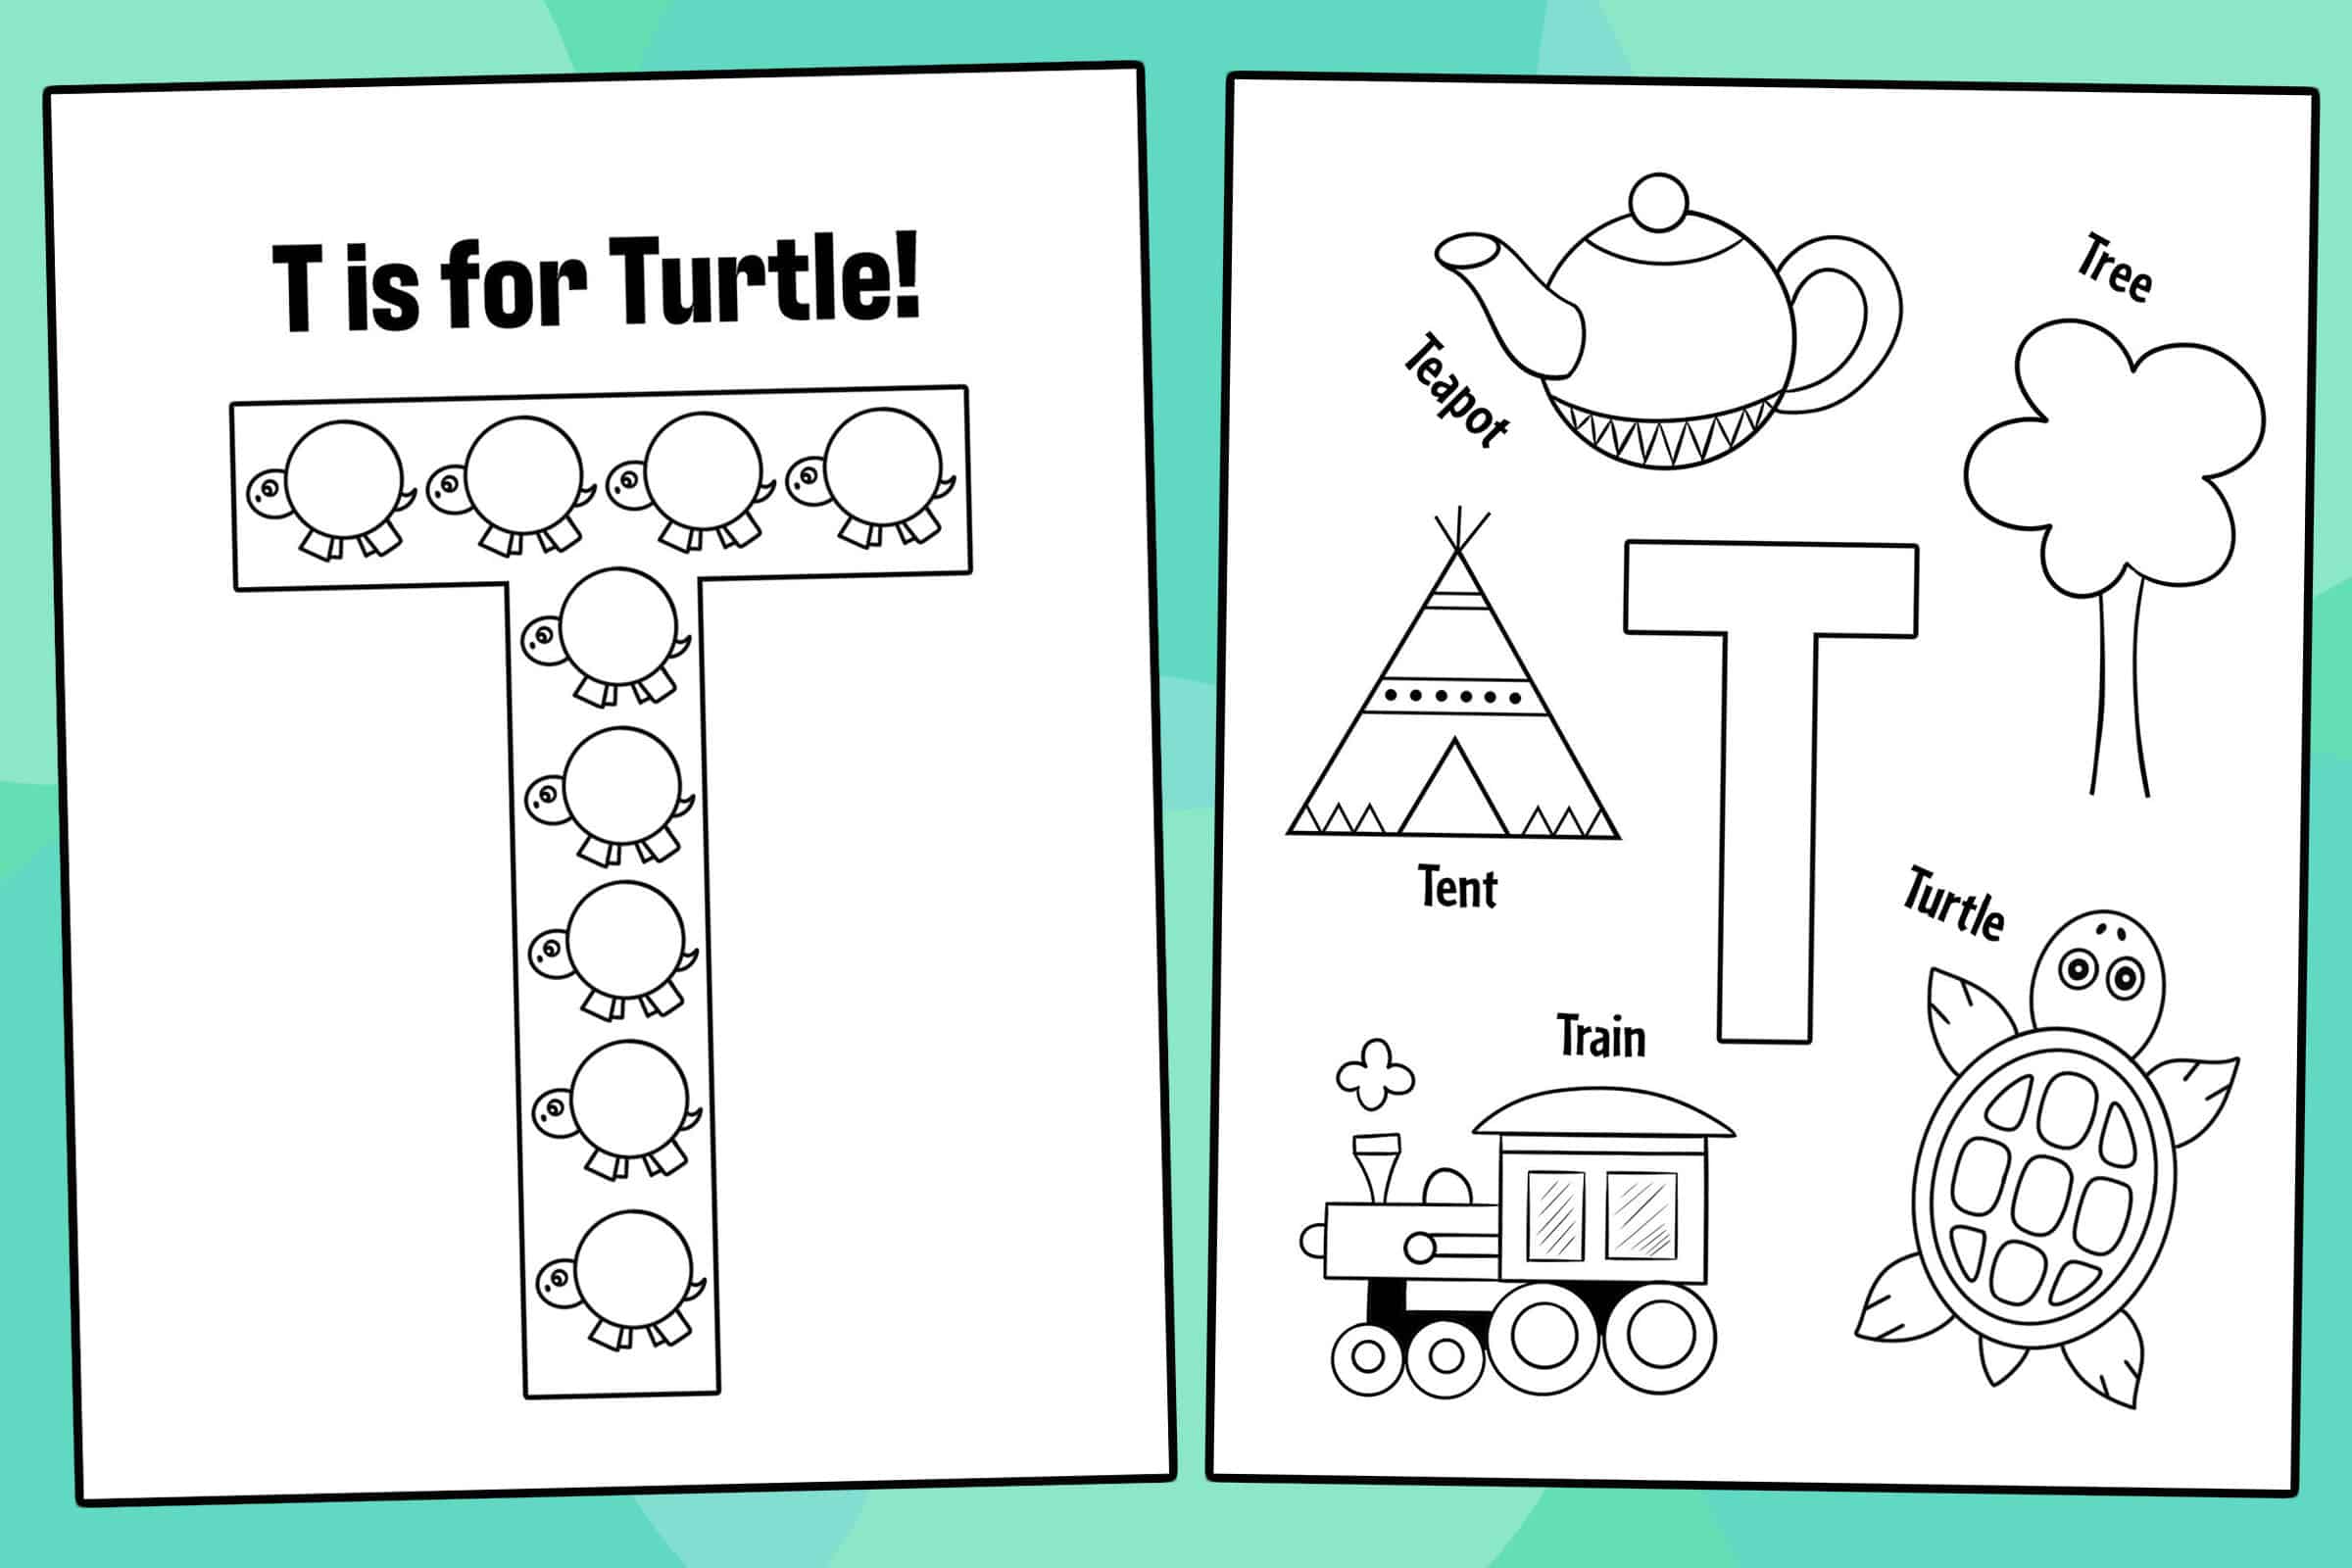 Free letter t worksheets for preschool â the hollydog blog